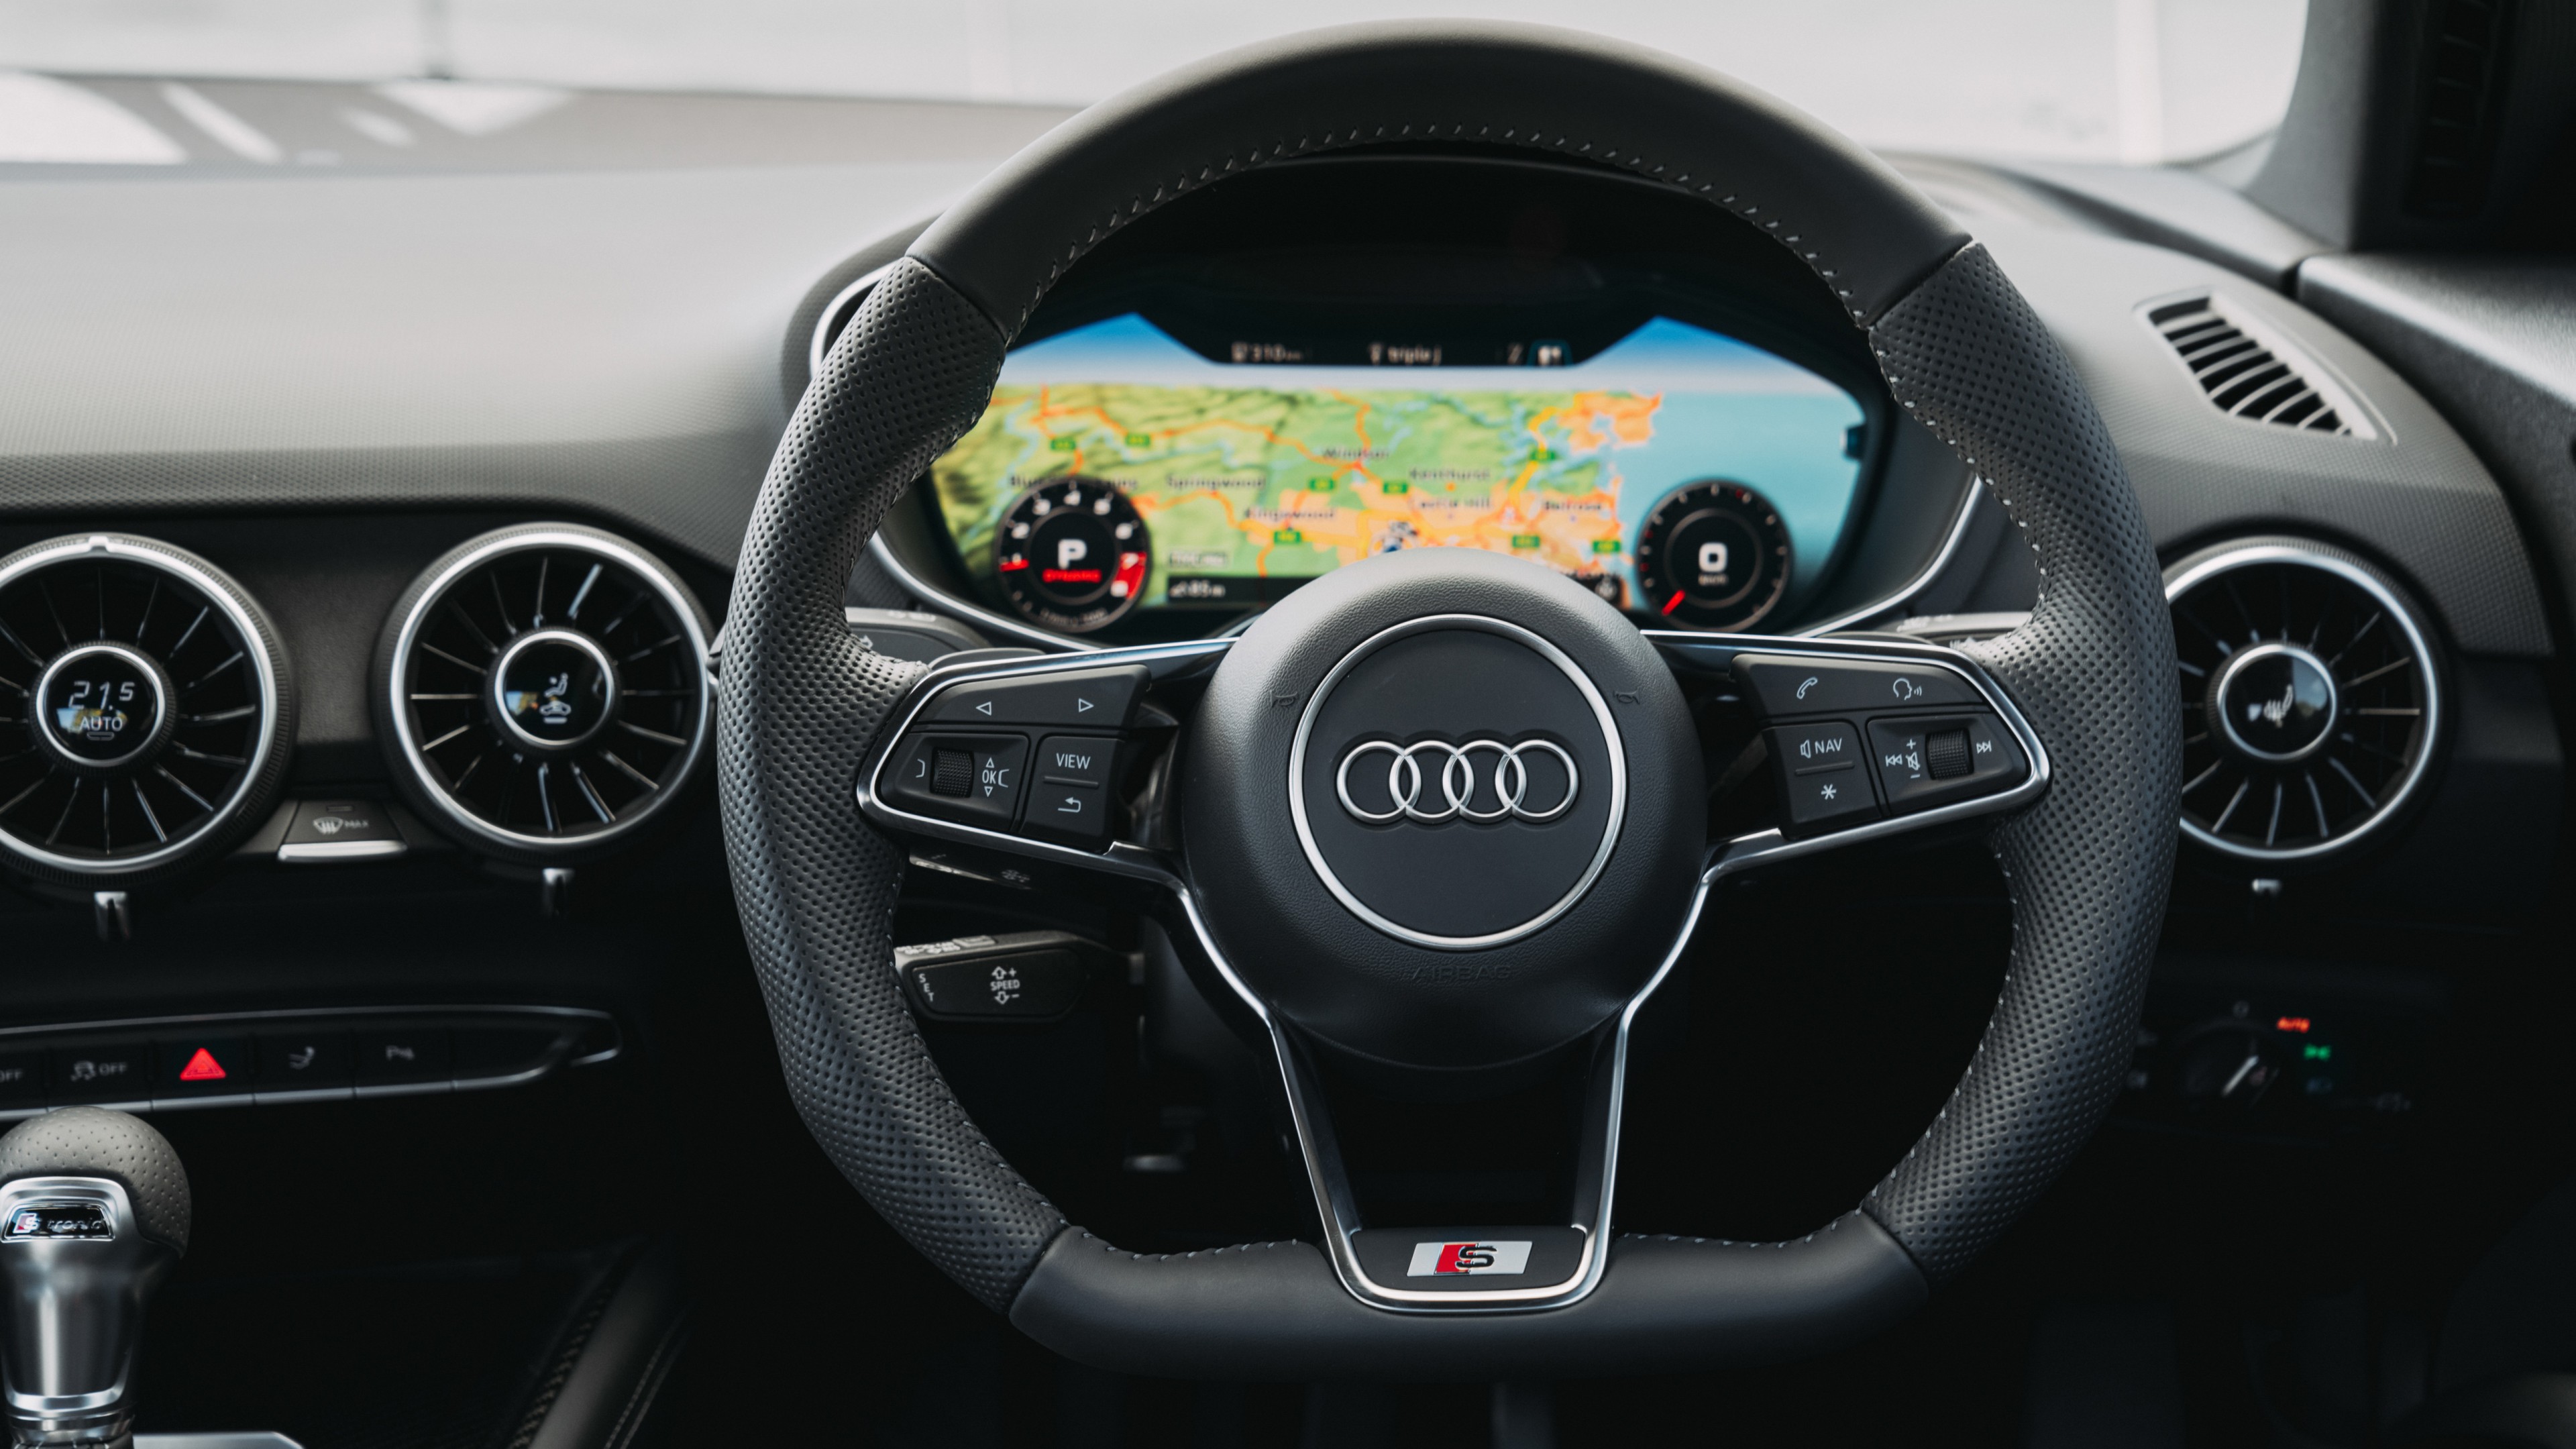 Audi Tts Coupe 2019 4k Interior Wallpaper Hd Car